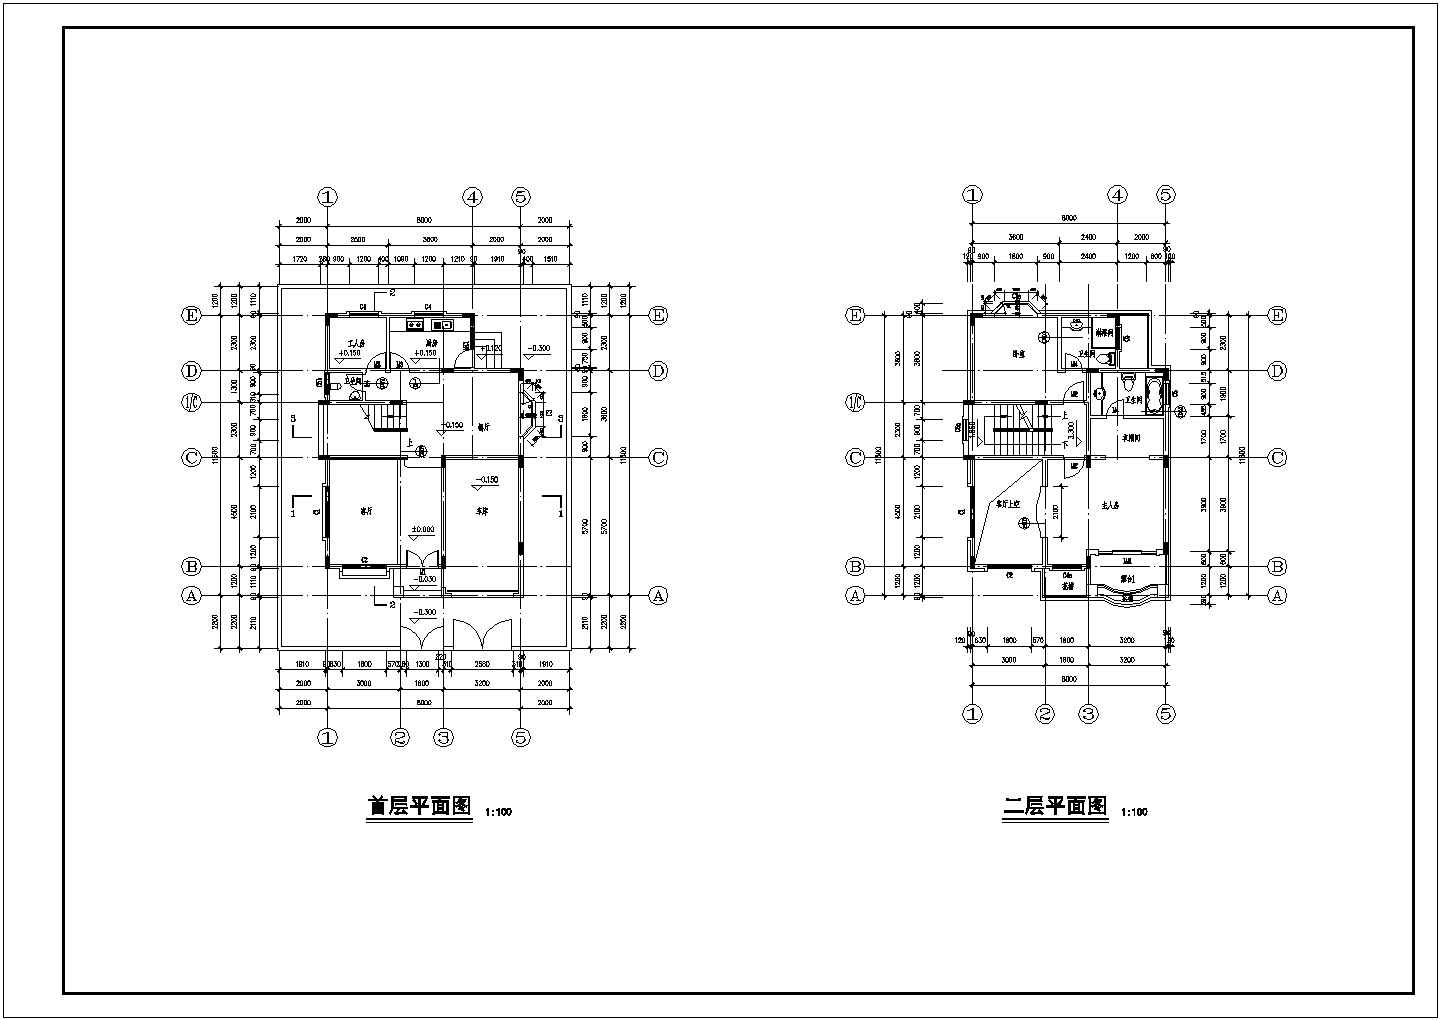 【潘家园】三层独栋小别墅建筑设计施工图